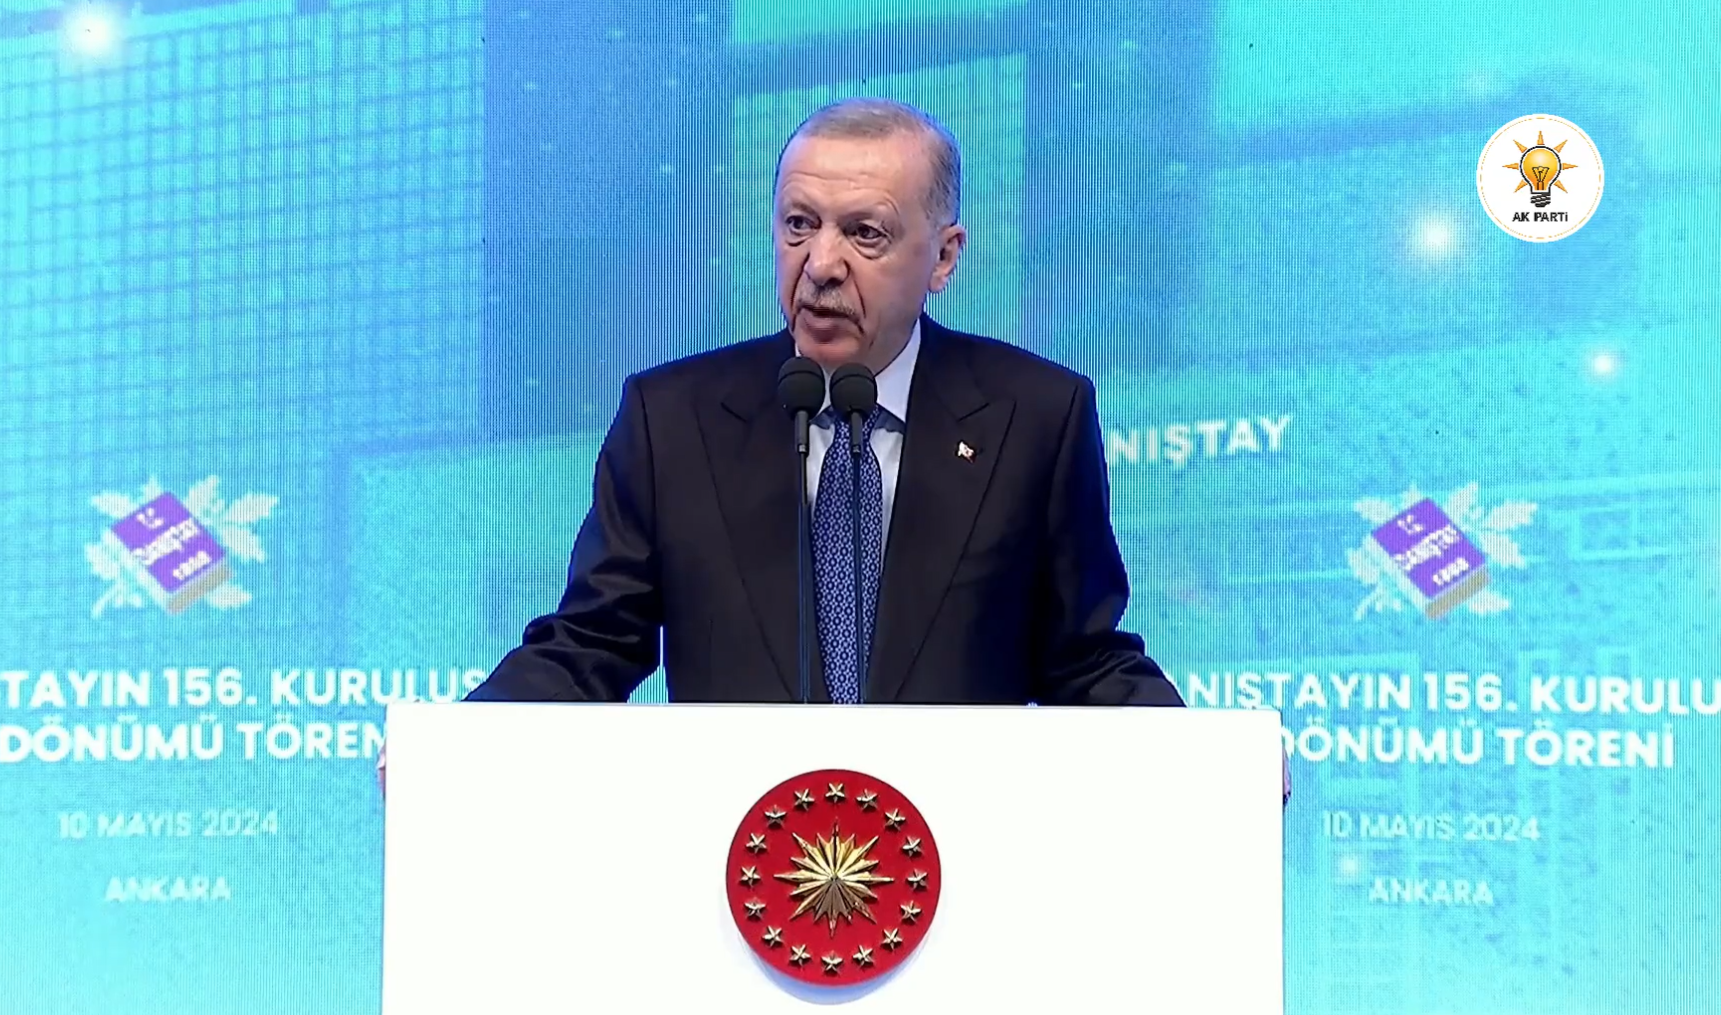 Erdoğan, Danıştay’ın 156. Kuruluş Yıldönümü Töreni'nde konuştu: Yargı da eleştirilemez değildir